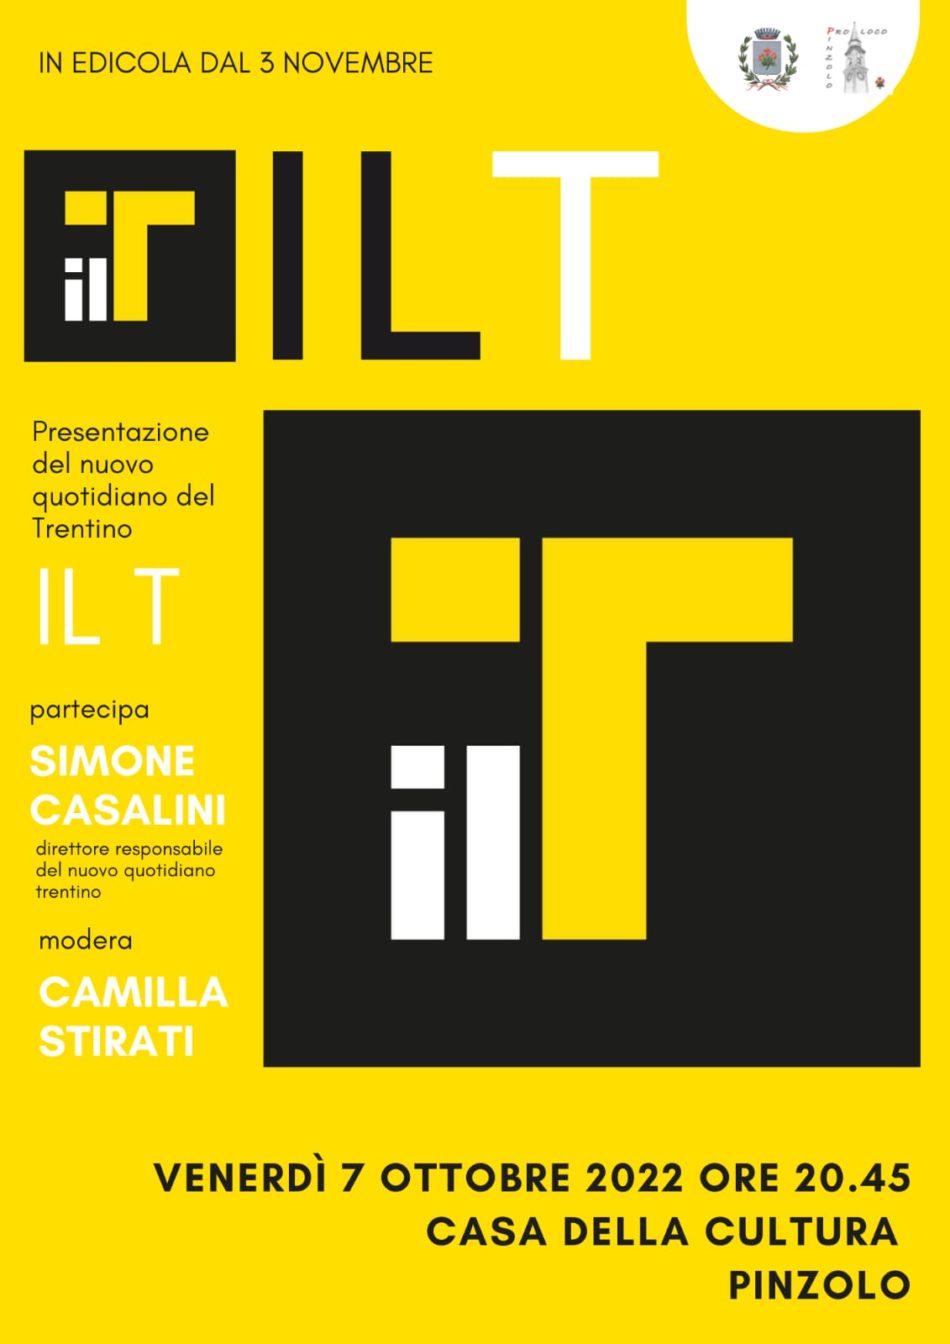 7 ottobre ore 20.45: a Pinzolo la presentazione del nuovo quotidiano del Trentino “Il T”